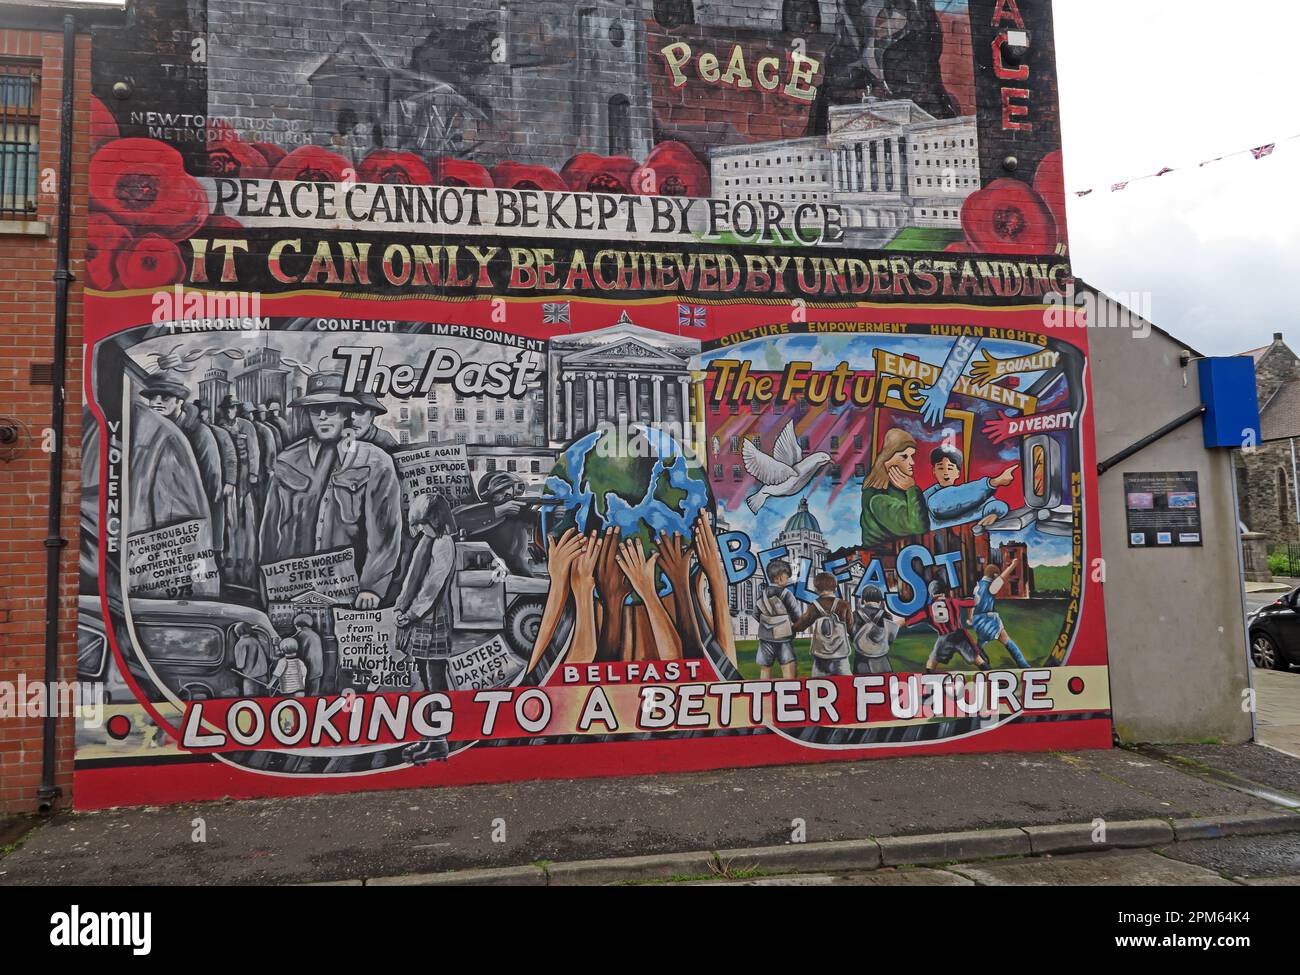 Community mural - Frieden kann nicht mit Gewalt erhalten werden, er kann nur durch Verständigung erreicht werden - Belfast blickt auf eine bessere Zukunft Stockfoto